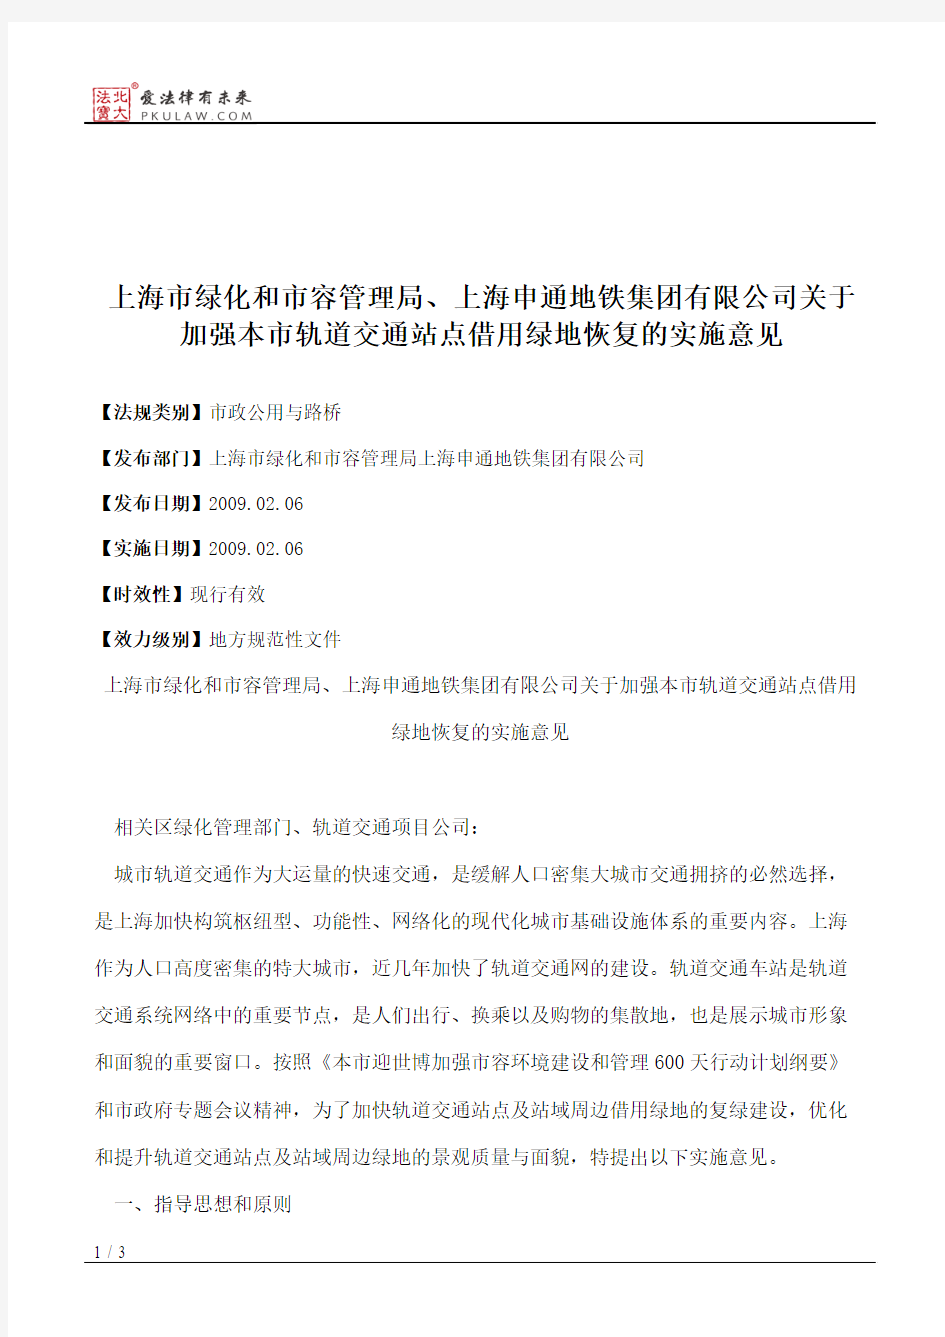 上海市绿化和市容管理局、上海申通地铁集团有限公司关于加强本市